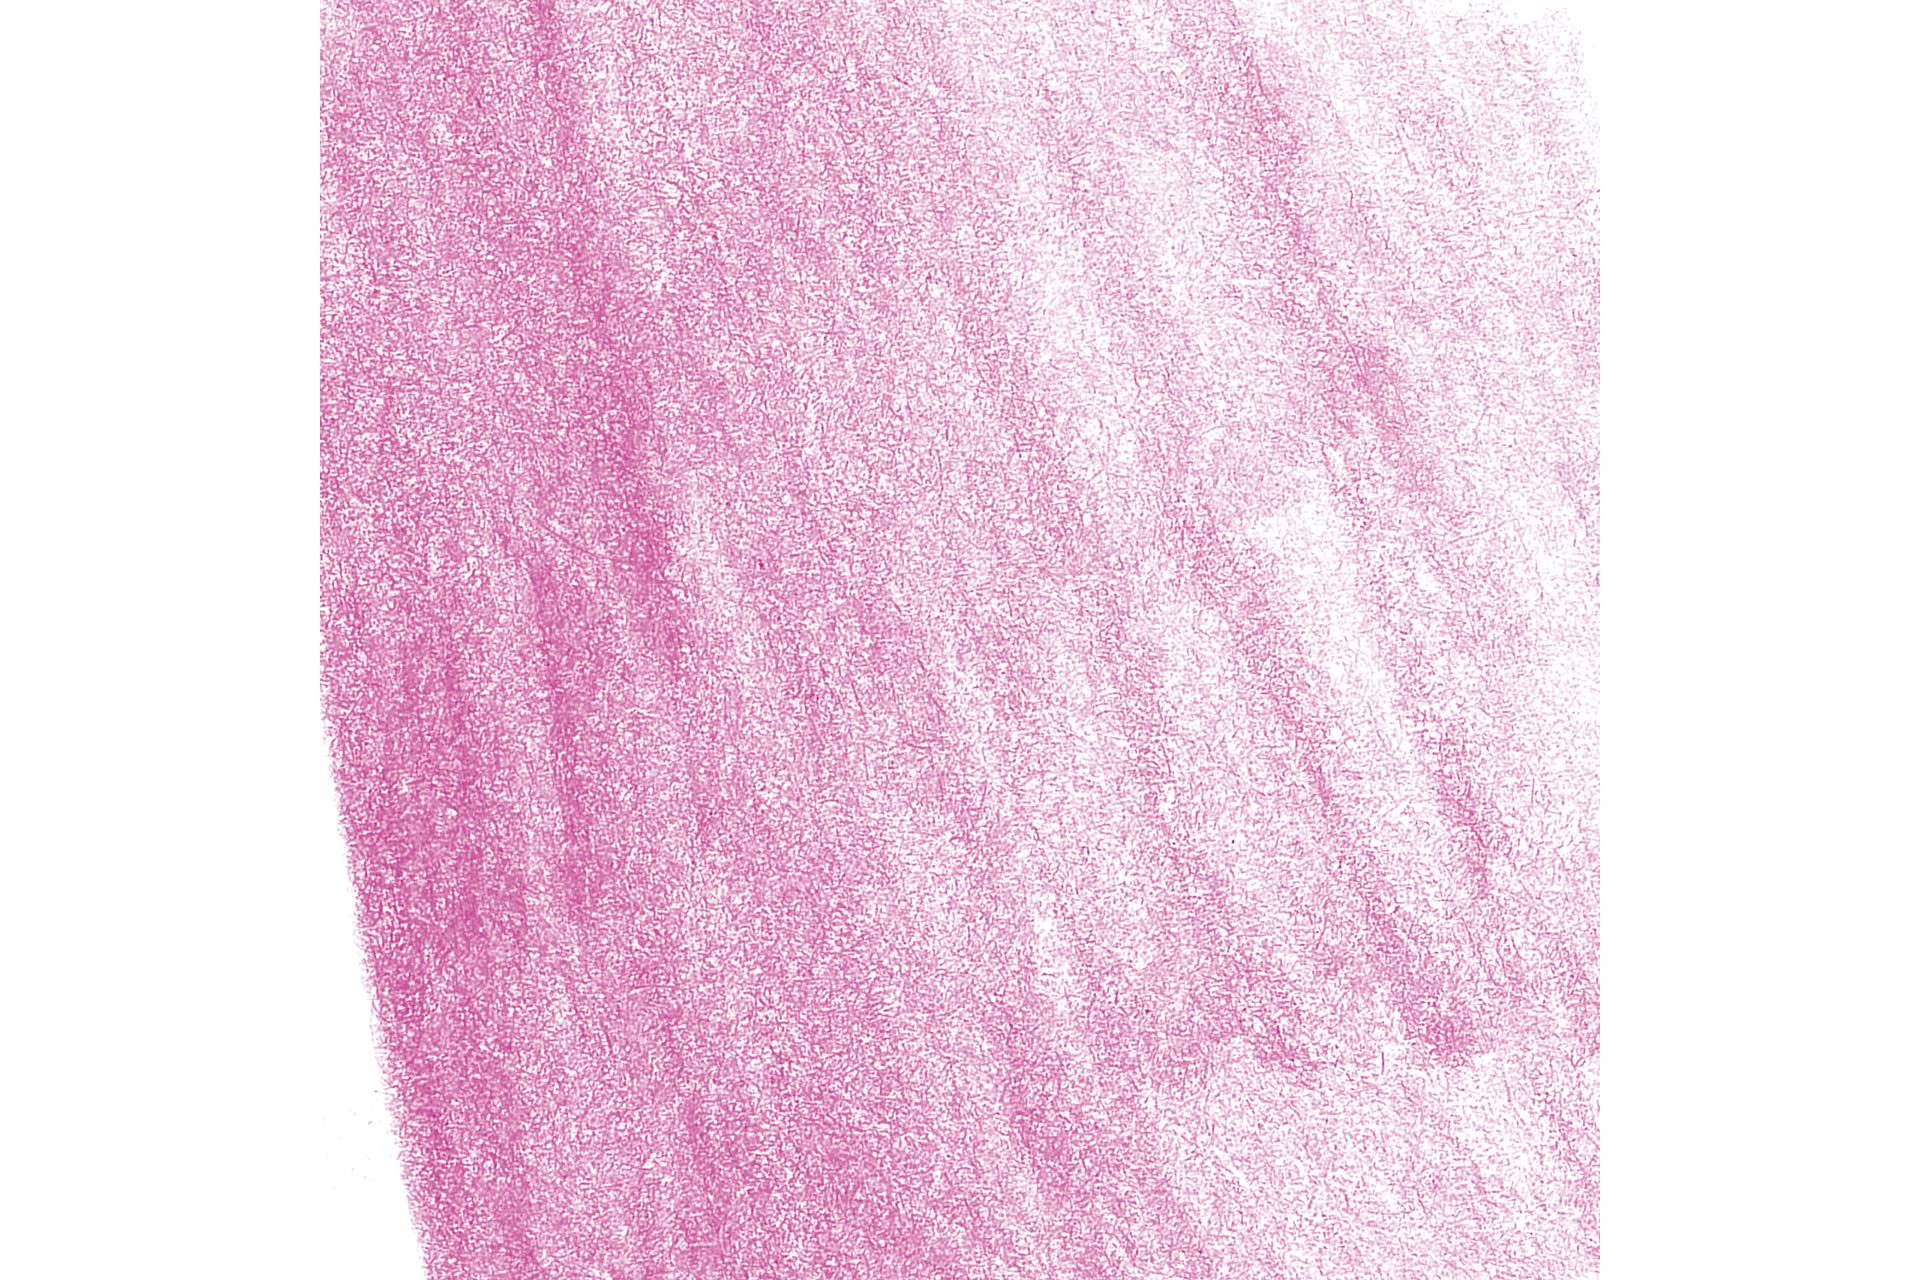 Matite colorate Faber durer 8200 col rosa porpora medio